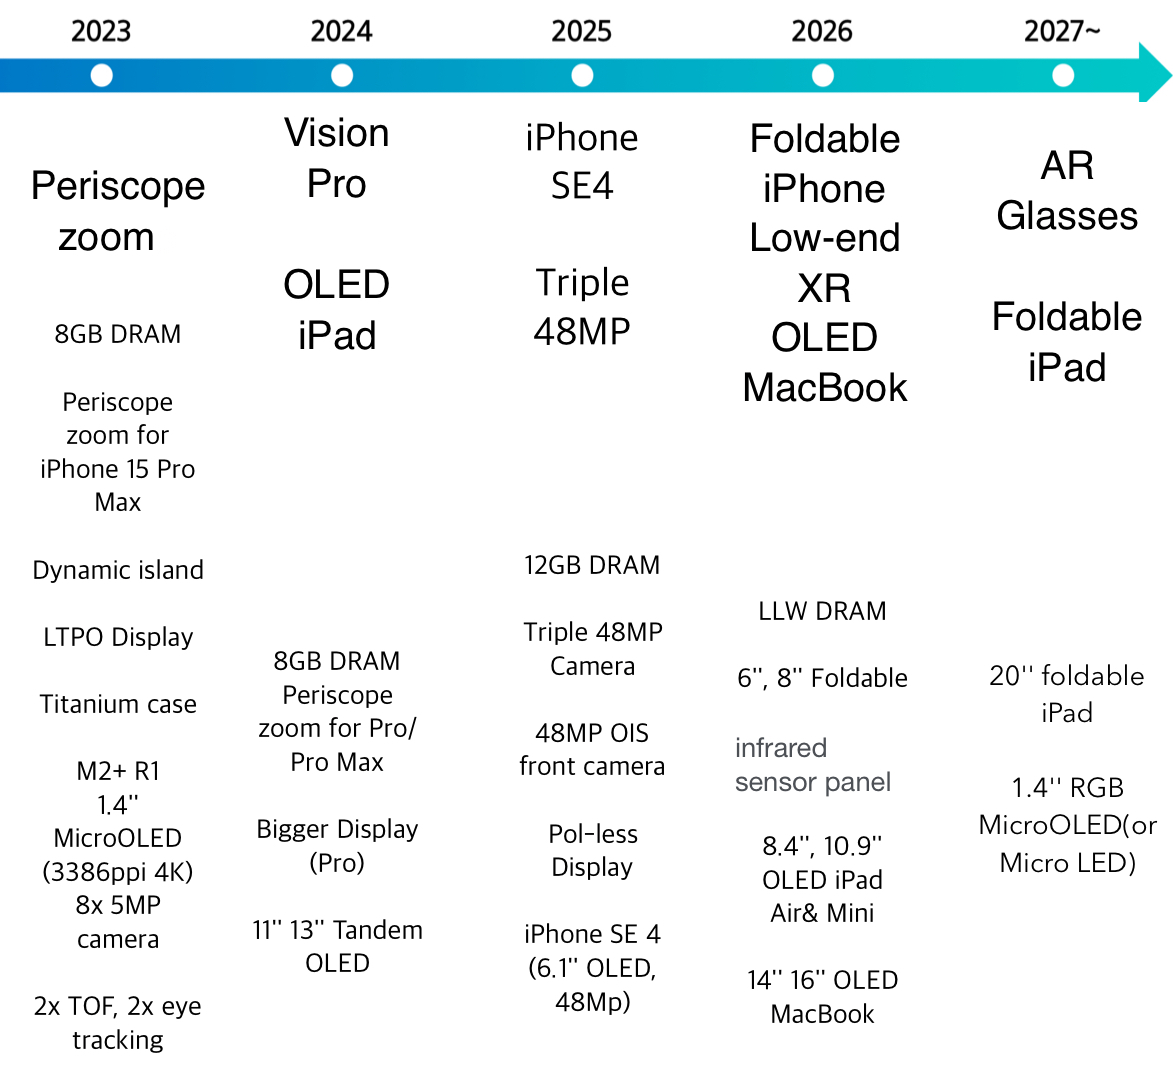 Samsung espera lanzar los próximos grandes productos de Apple: iPhone plegable, gafas AR, iPad OLED y más